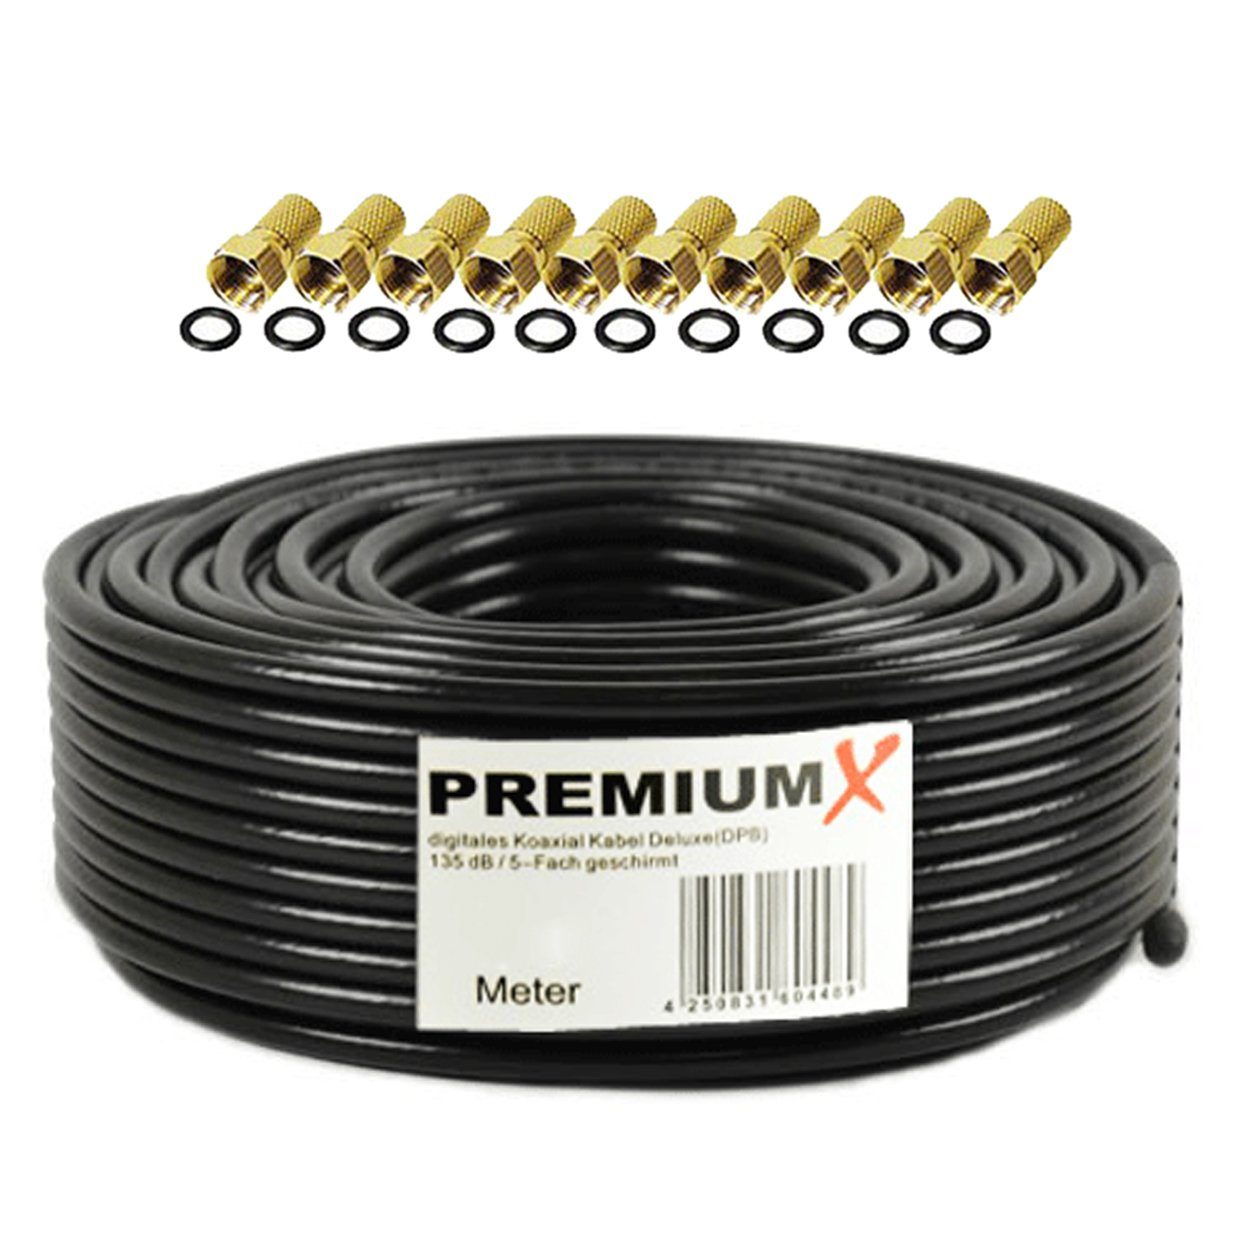 PremiumX 50m DELUXE PRO Koaxial Kabel SCHWARZ 135dB 5-Fach Kupfer 10x F-Stecker SAT-Kabel